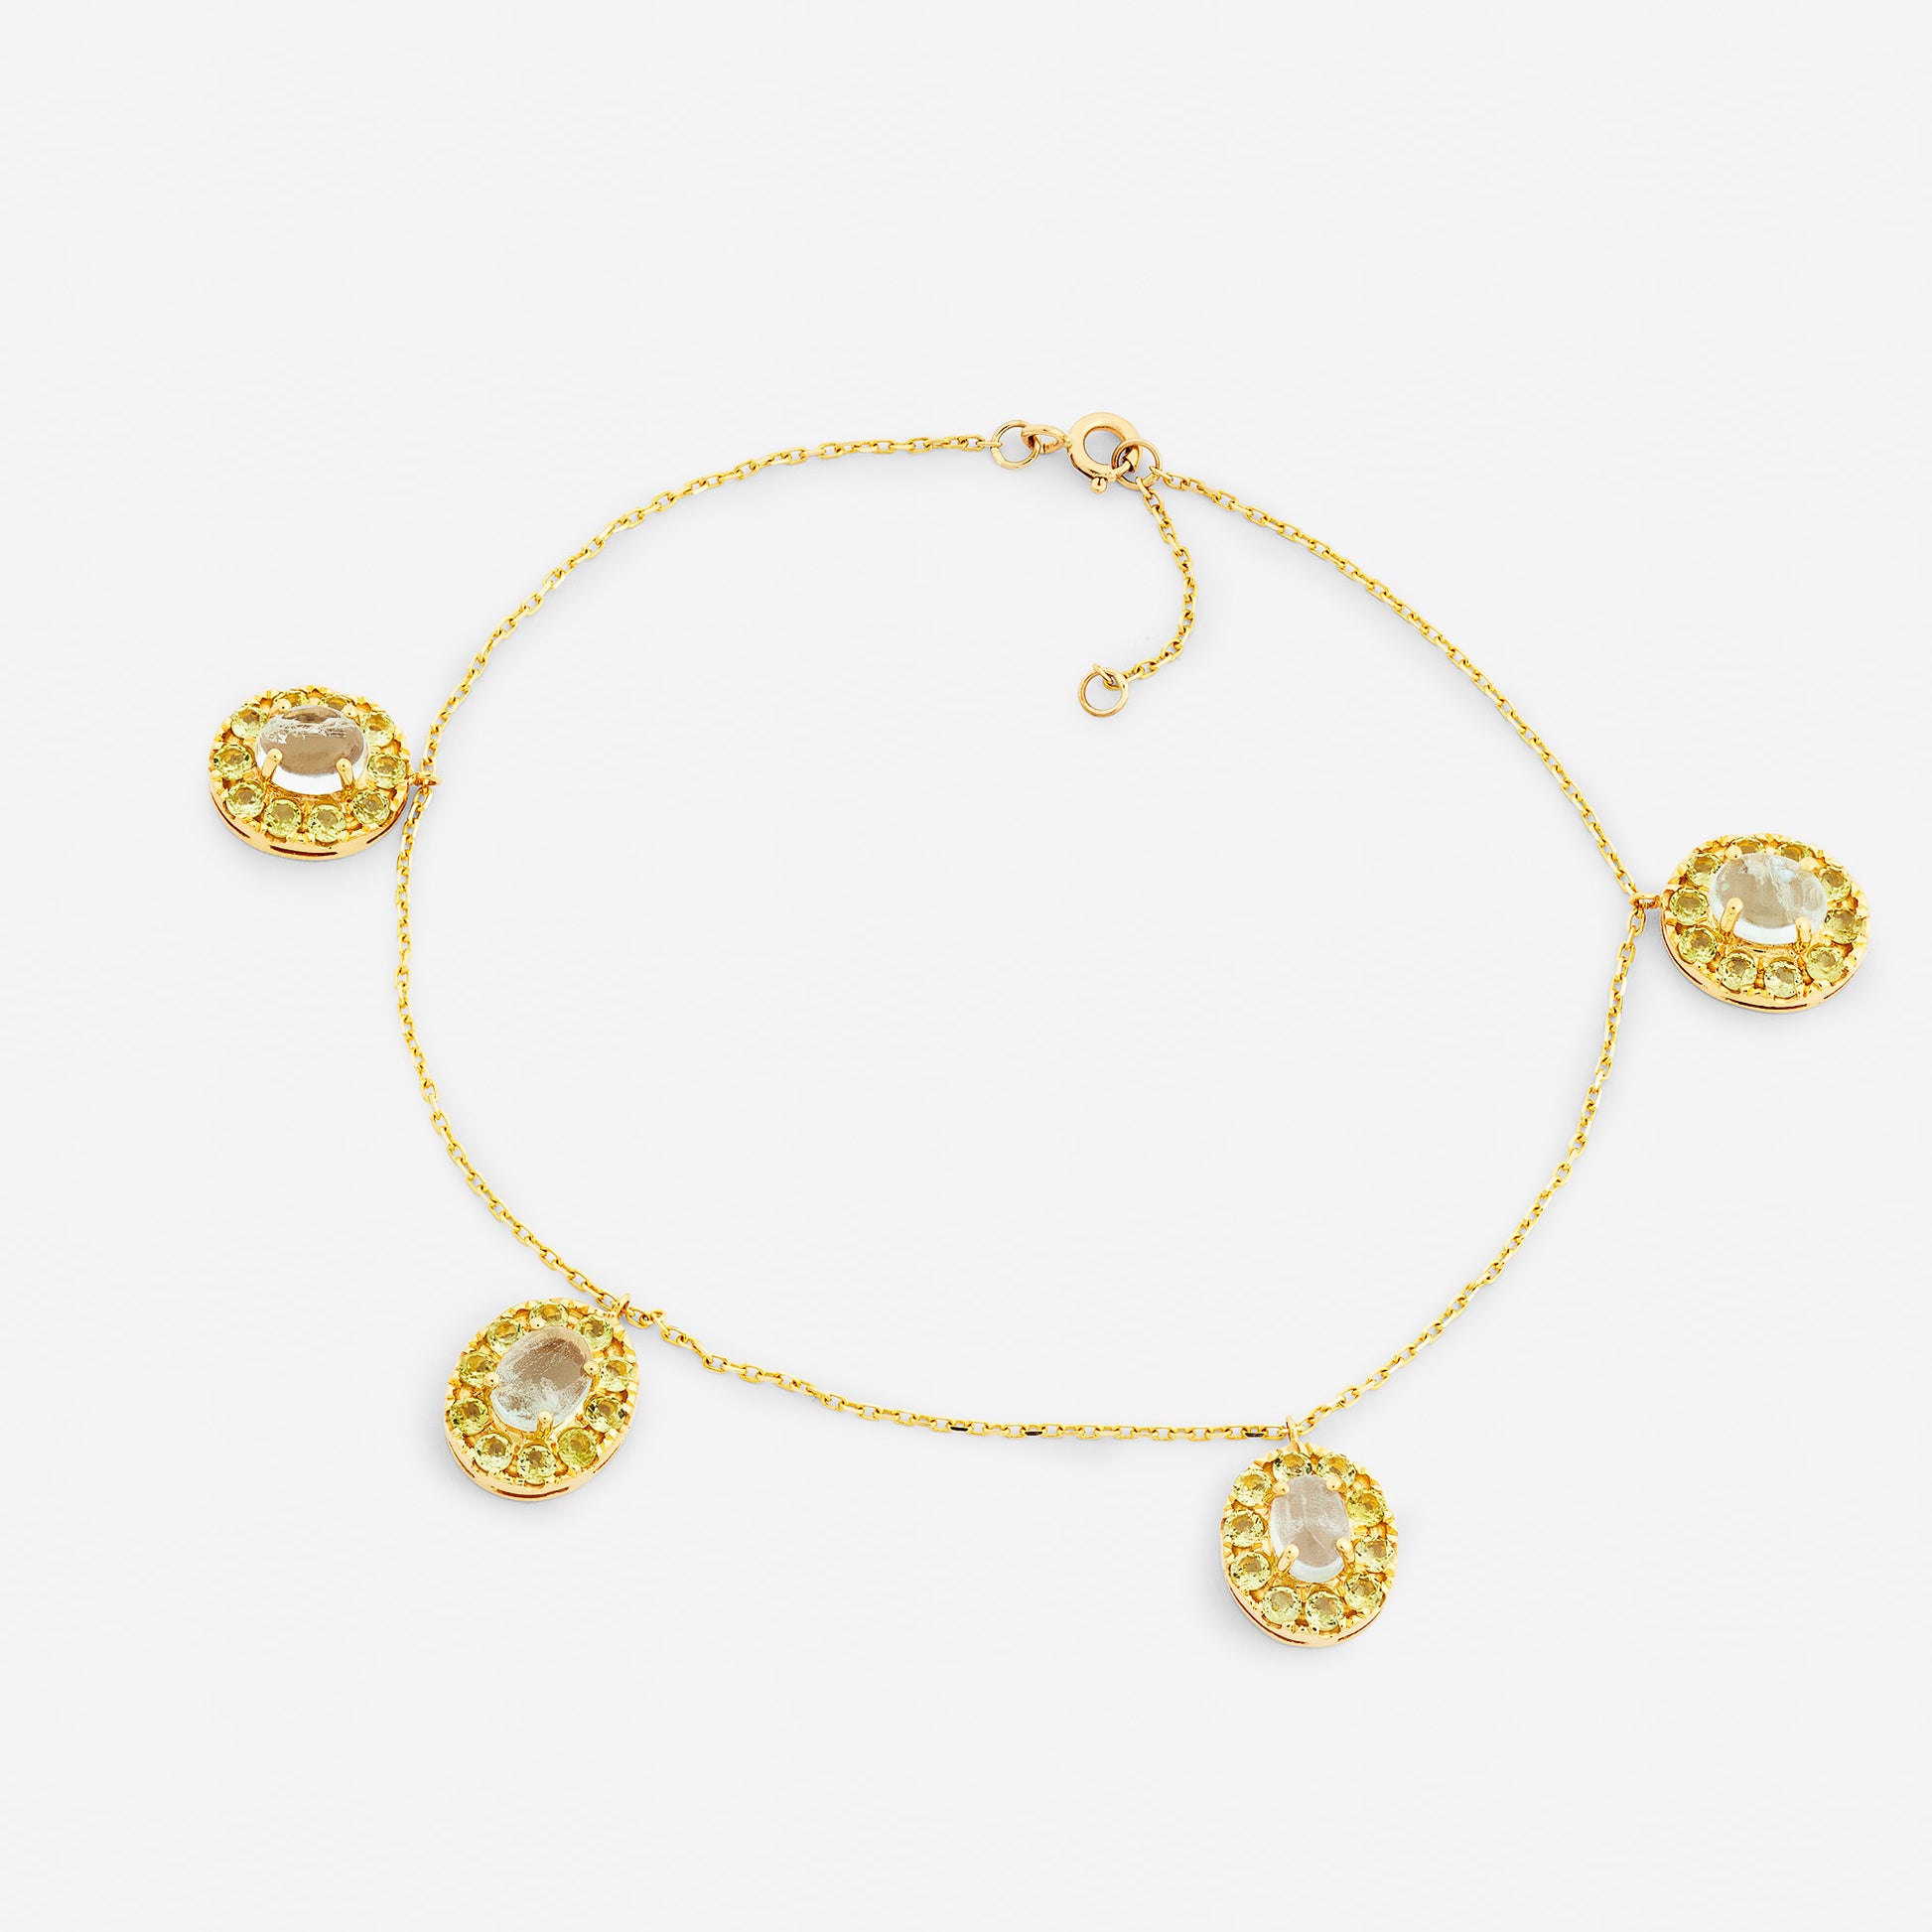 Handgjord fotlänk smycken i 18 karat guld med akvamarin och peridot.